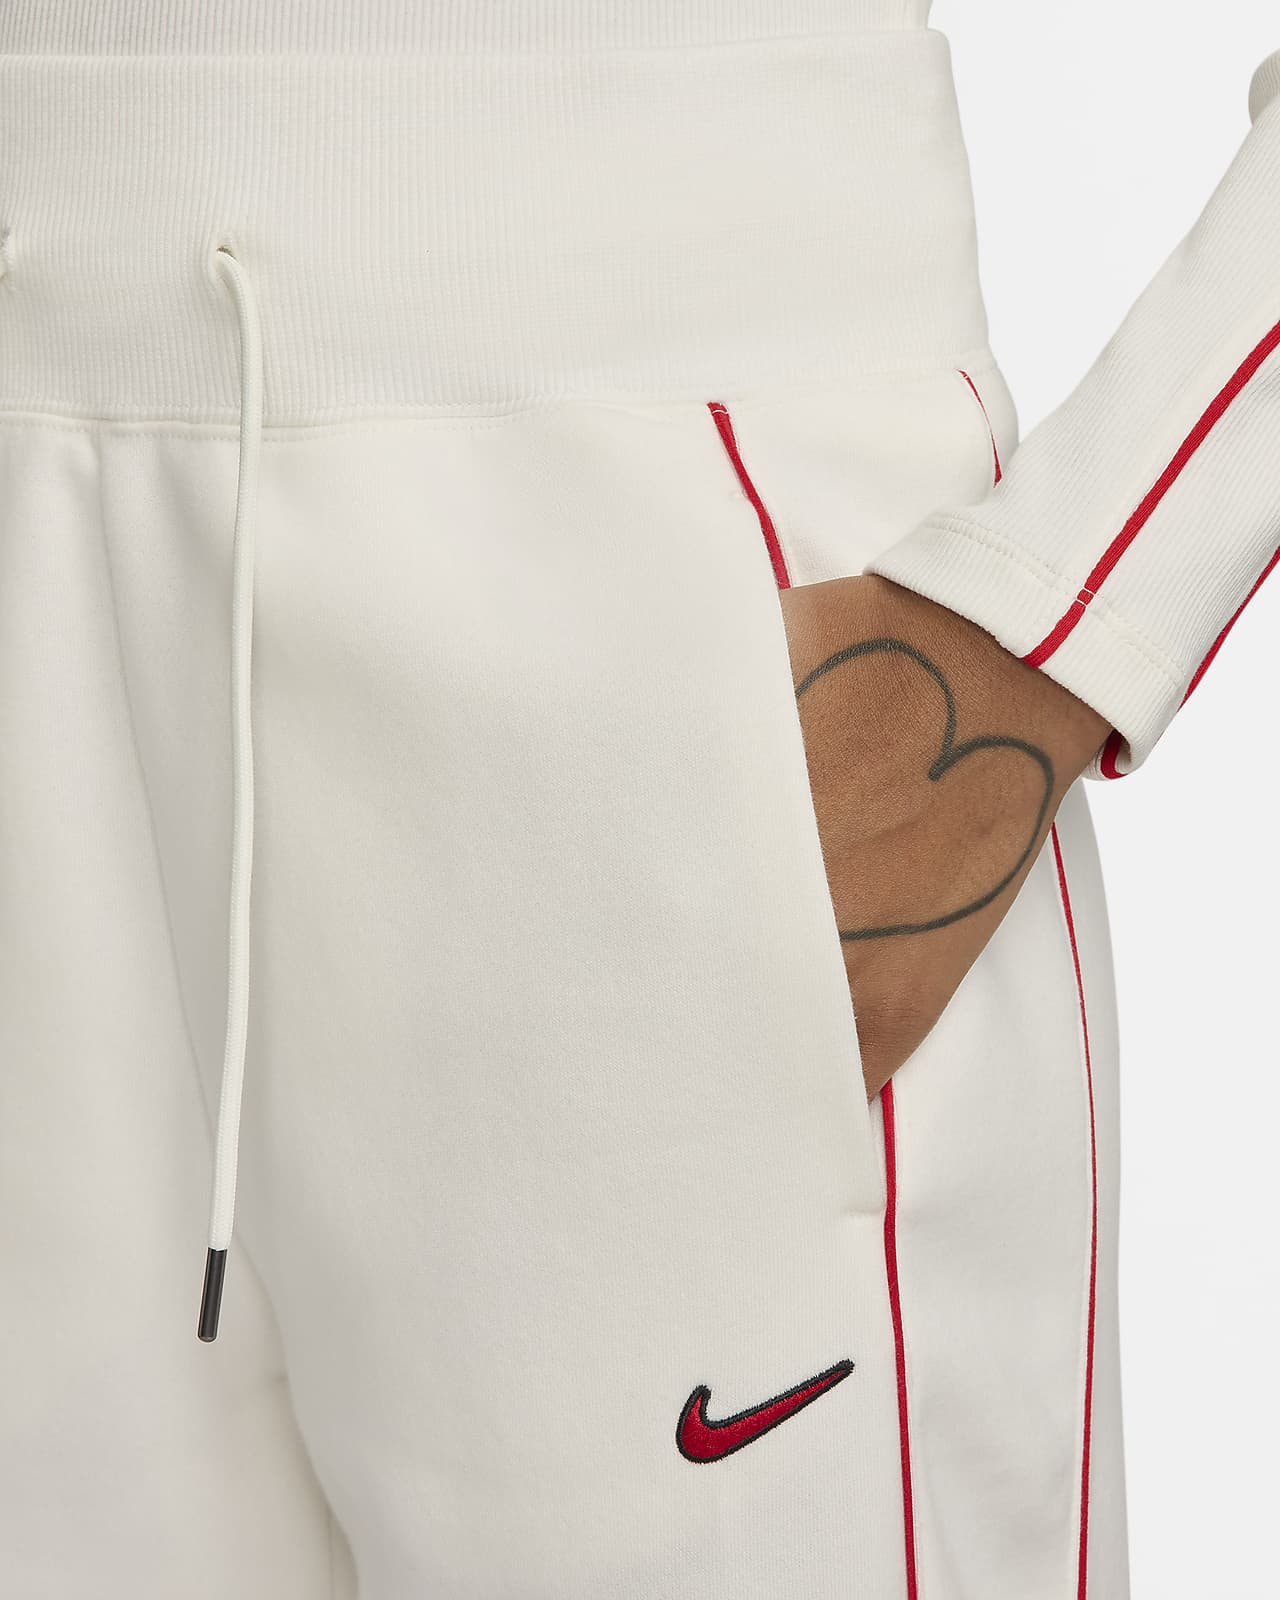 Nike Women's NSW Open Hem Fleece Pant Varsity